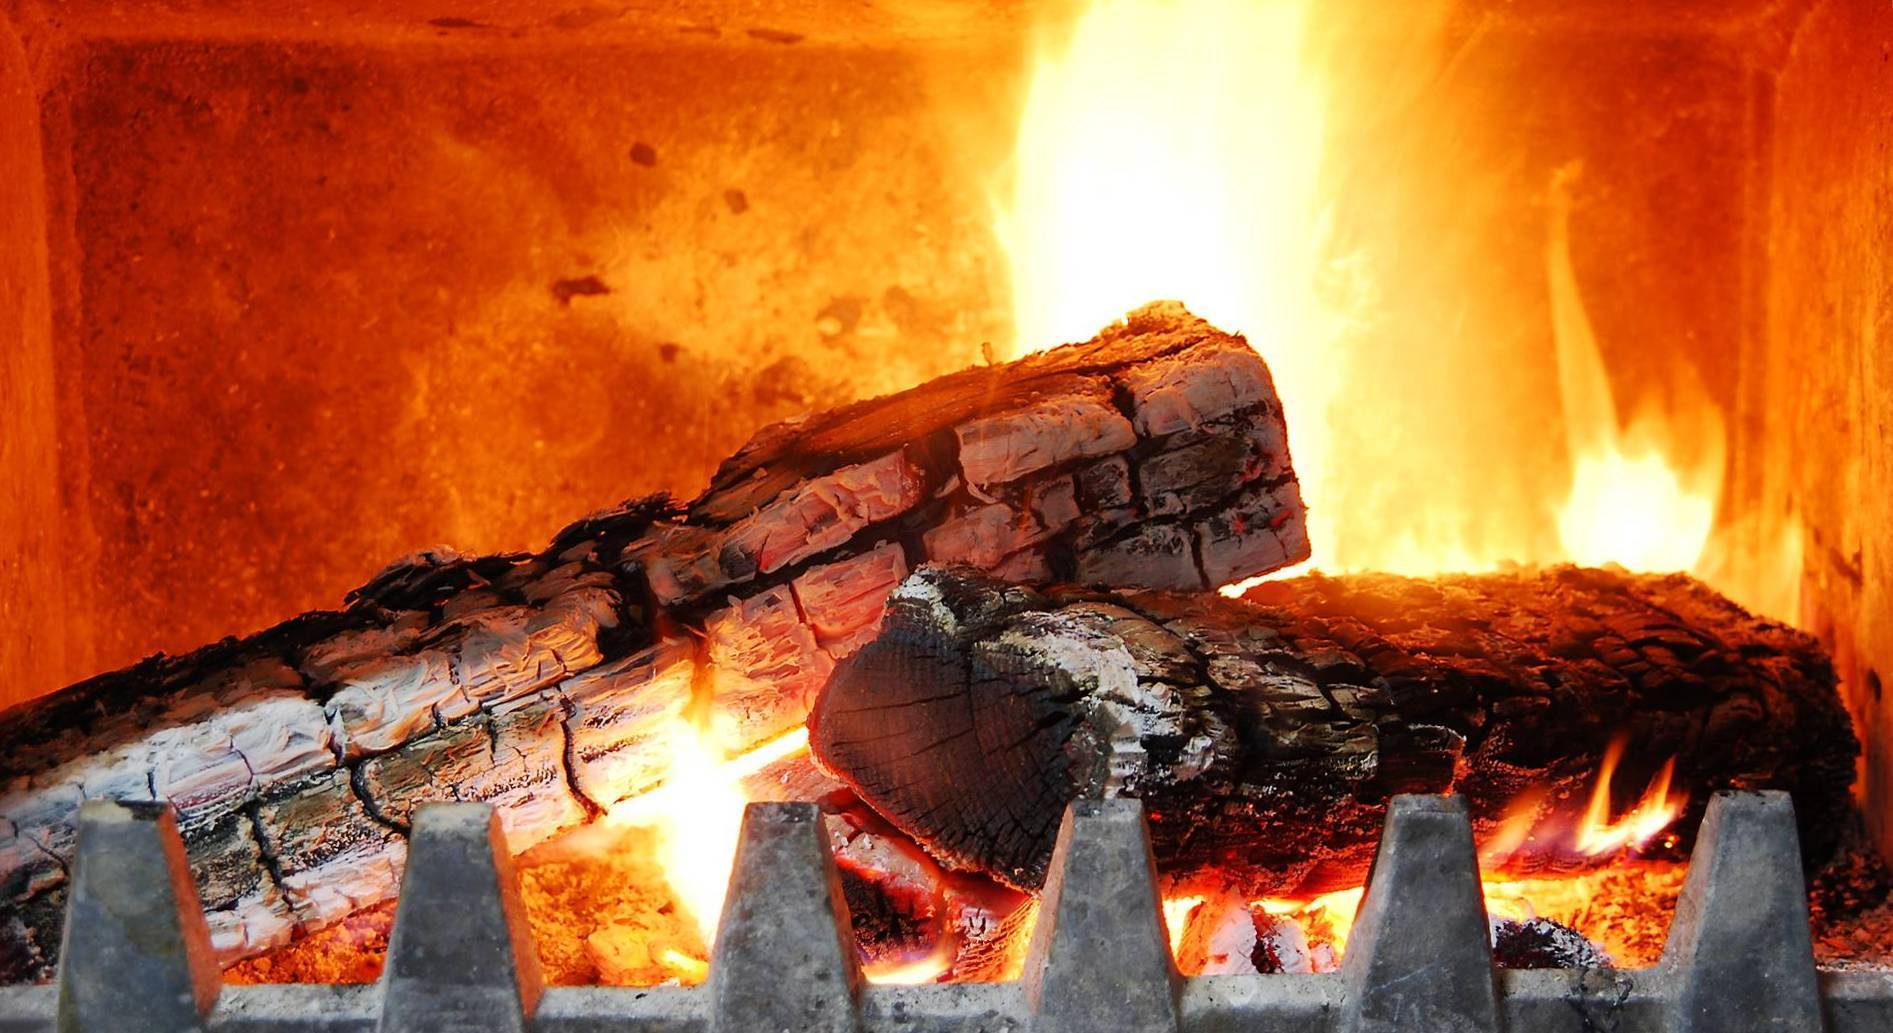 Температура горения дров в печи, котле, камине на дровах, какие дрова для печки лучше и выгоднее